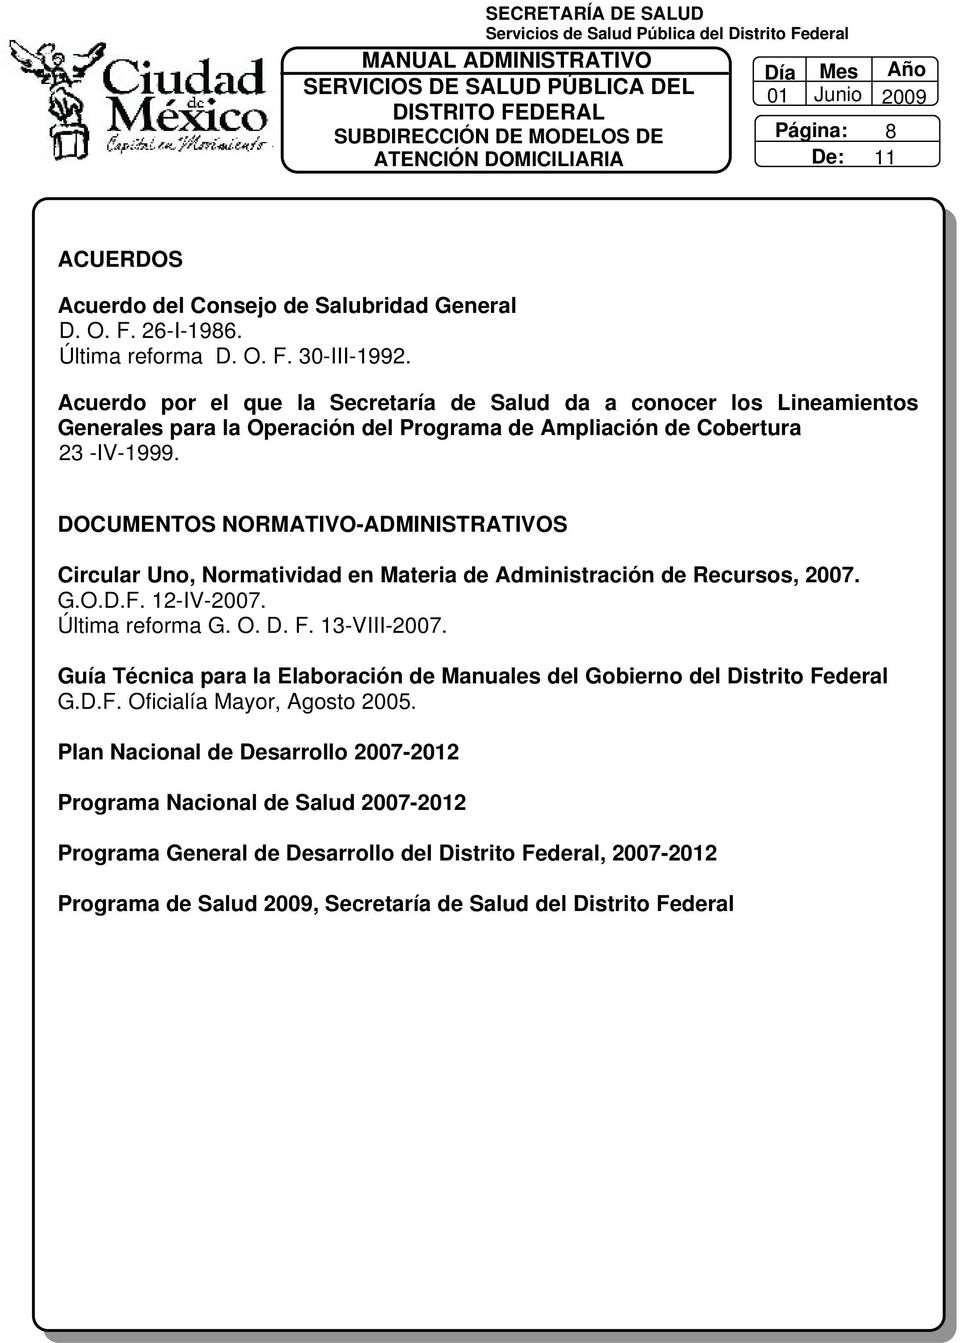 DOCUMENTOS NORMATIVO-ADMINISTRATIVOS Circular Uno, Normatividad en Materia de Administración de Recursos, 2007. G.O.D.F. 2-IV-2007. Última reforma G. O. D. F. 3-VIII-2007.